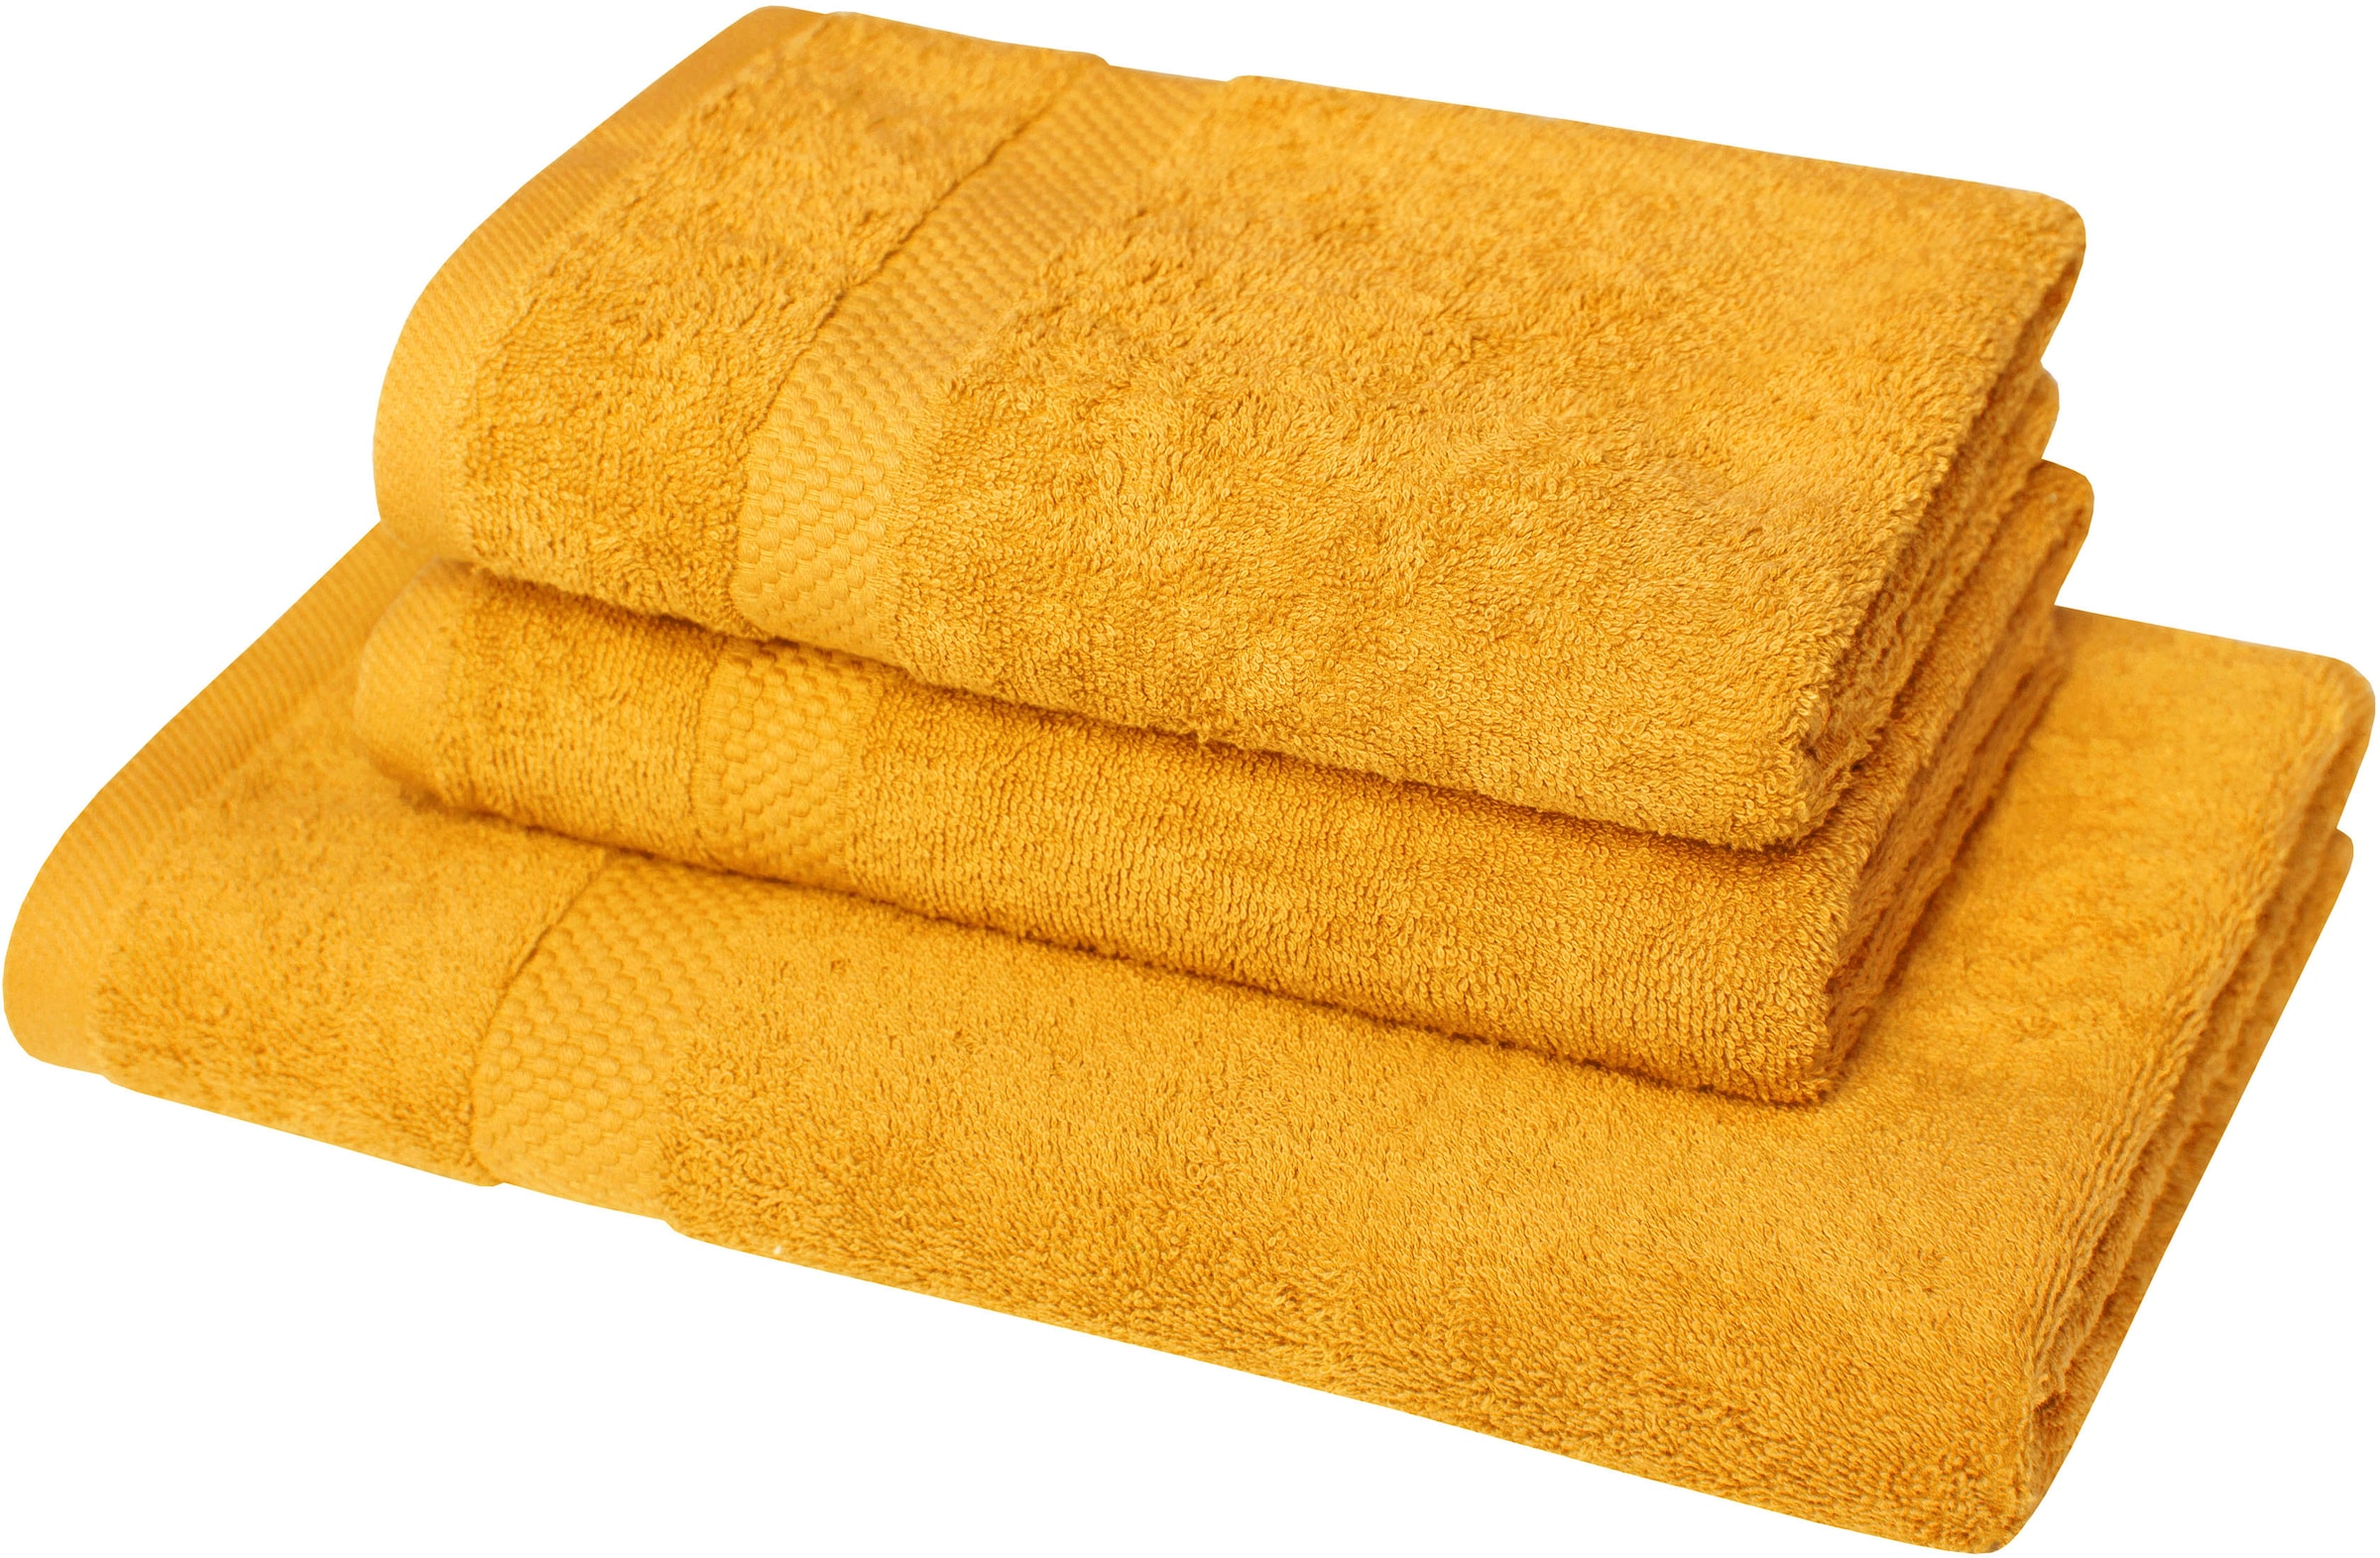 Handtuchsets aus Holz Preisvergleich Moebel | 24